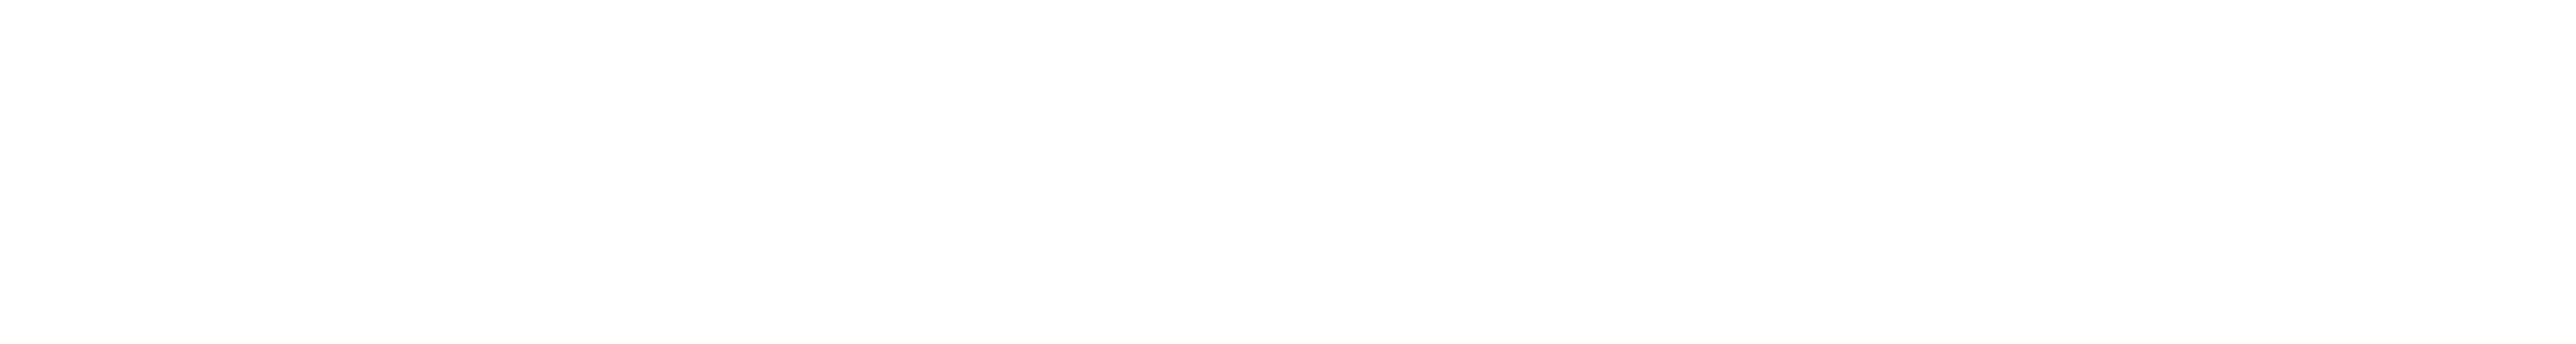 gfi-software